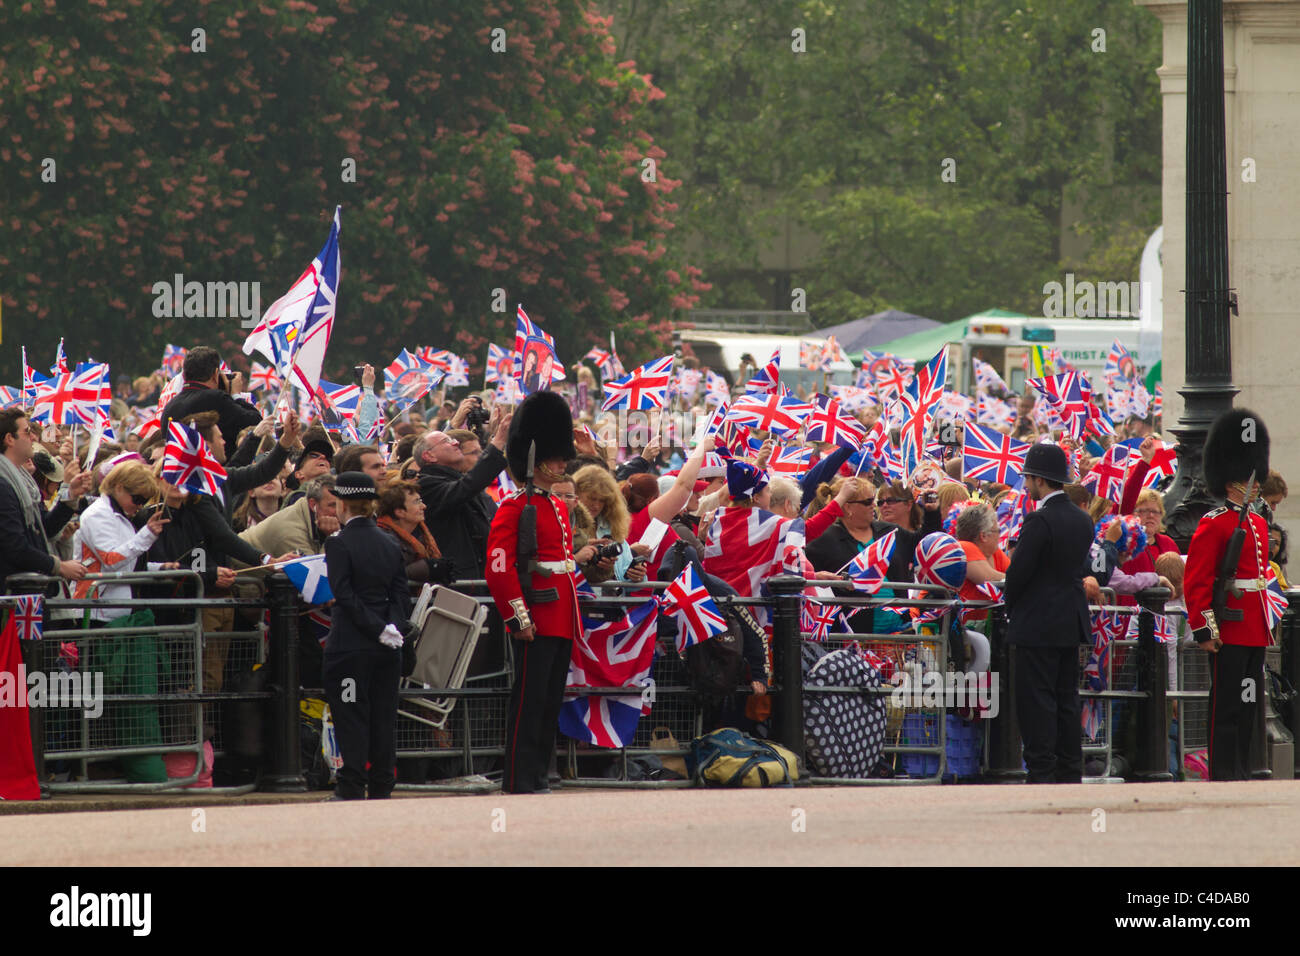 La foule attendre le retour du Prince William et Kate Middleton, (29 avril 2011), Londres, Angleterre Banque D'Images